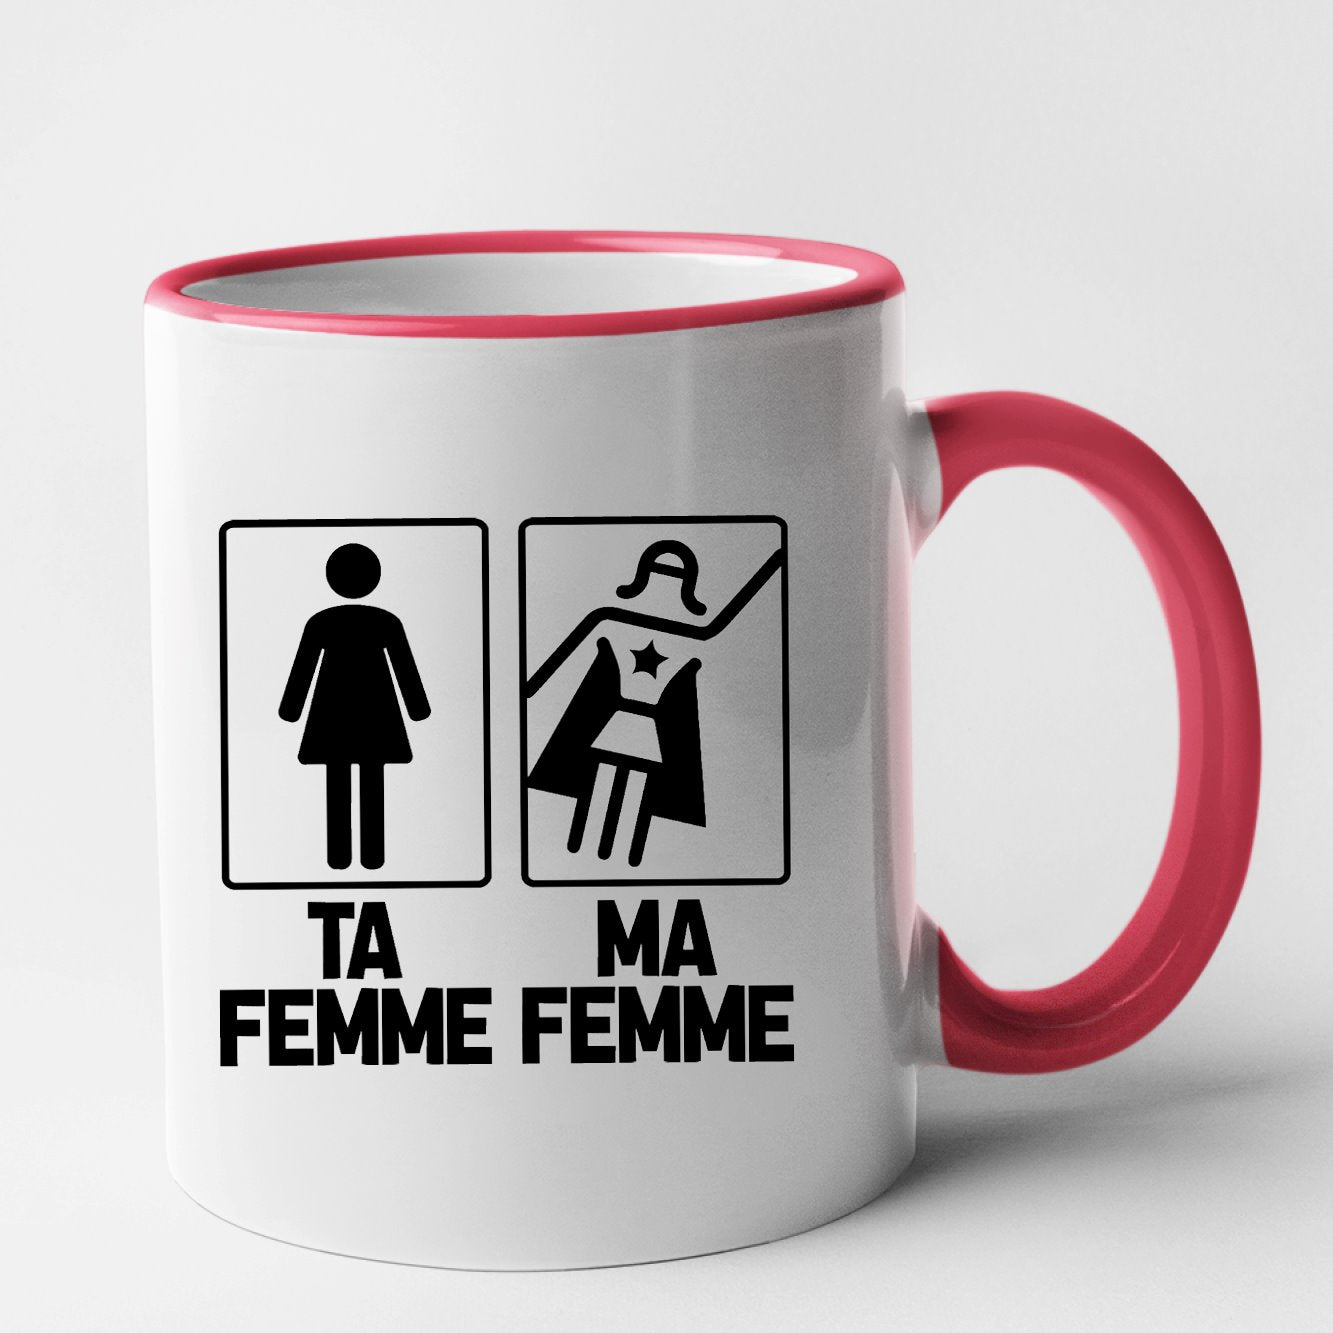 Femme I Mug